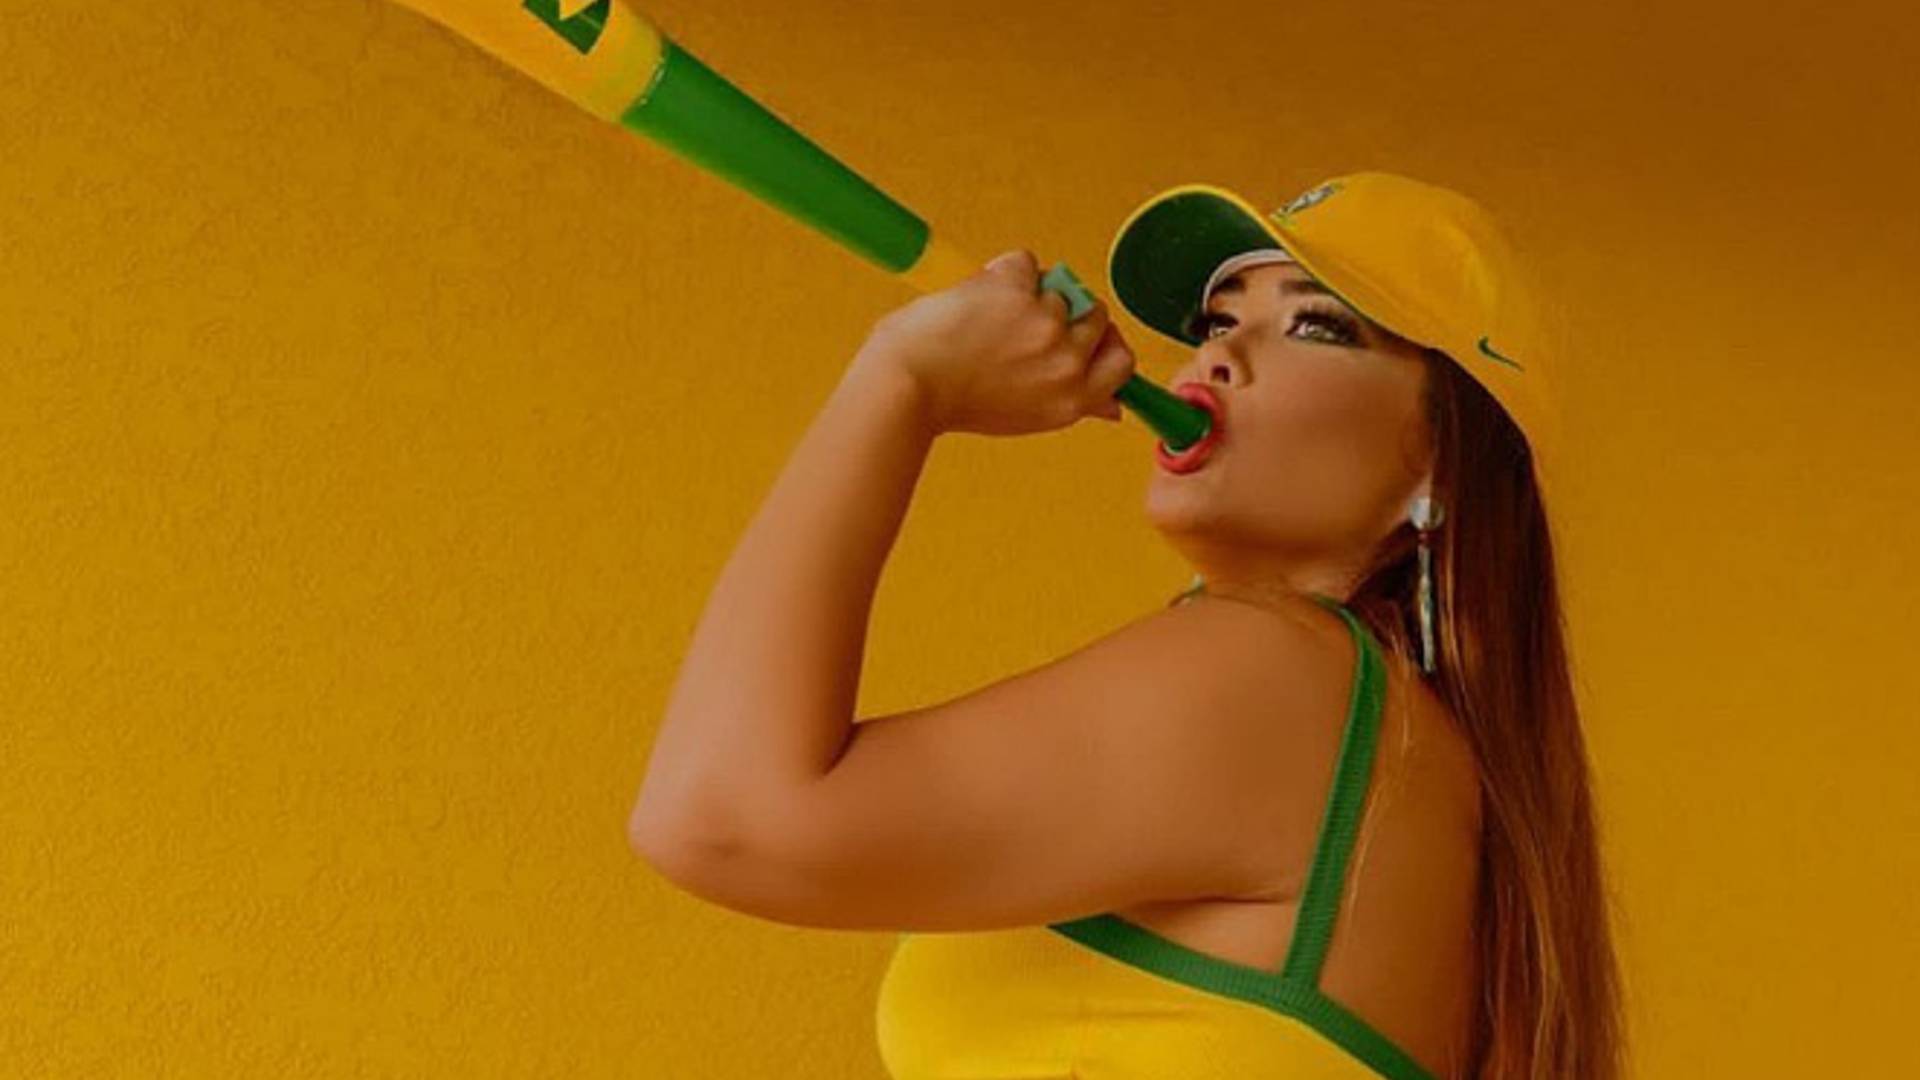 De calcinha PP verde e amarela, Geisy Arruda coloca vuvuzela dentro da boca: “Empinando”